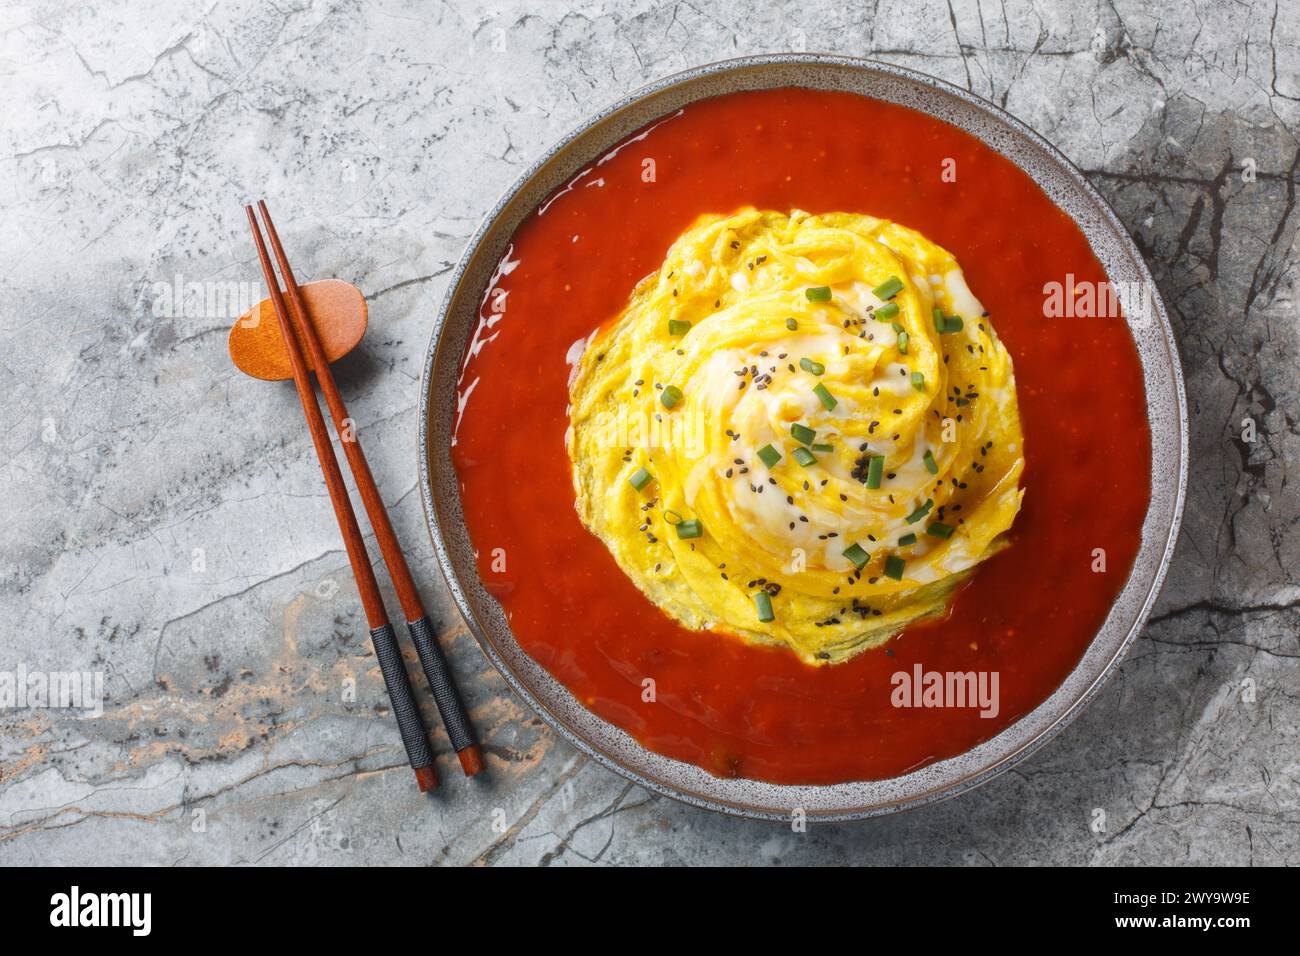 Tornade omelette tourbillonnante asiatique avec riz frit et sauce piquante gros plan dans une assiette sur la table. Vue horizontale de dessus Banque D'Images